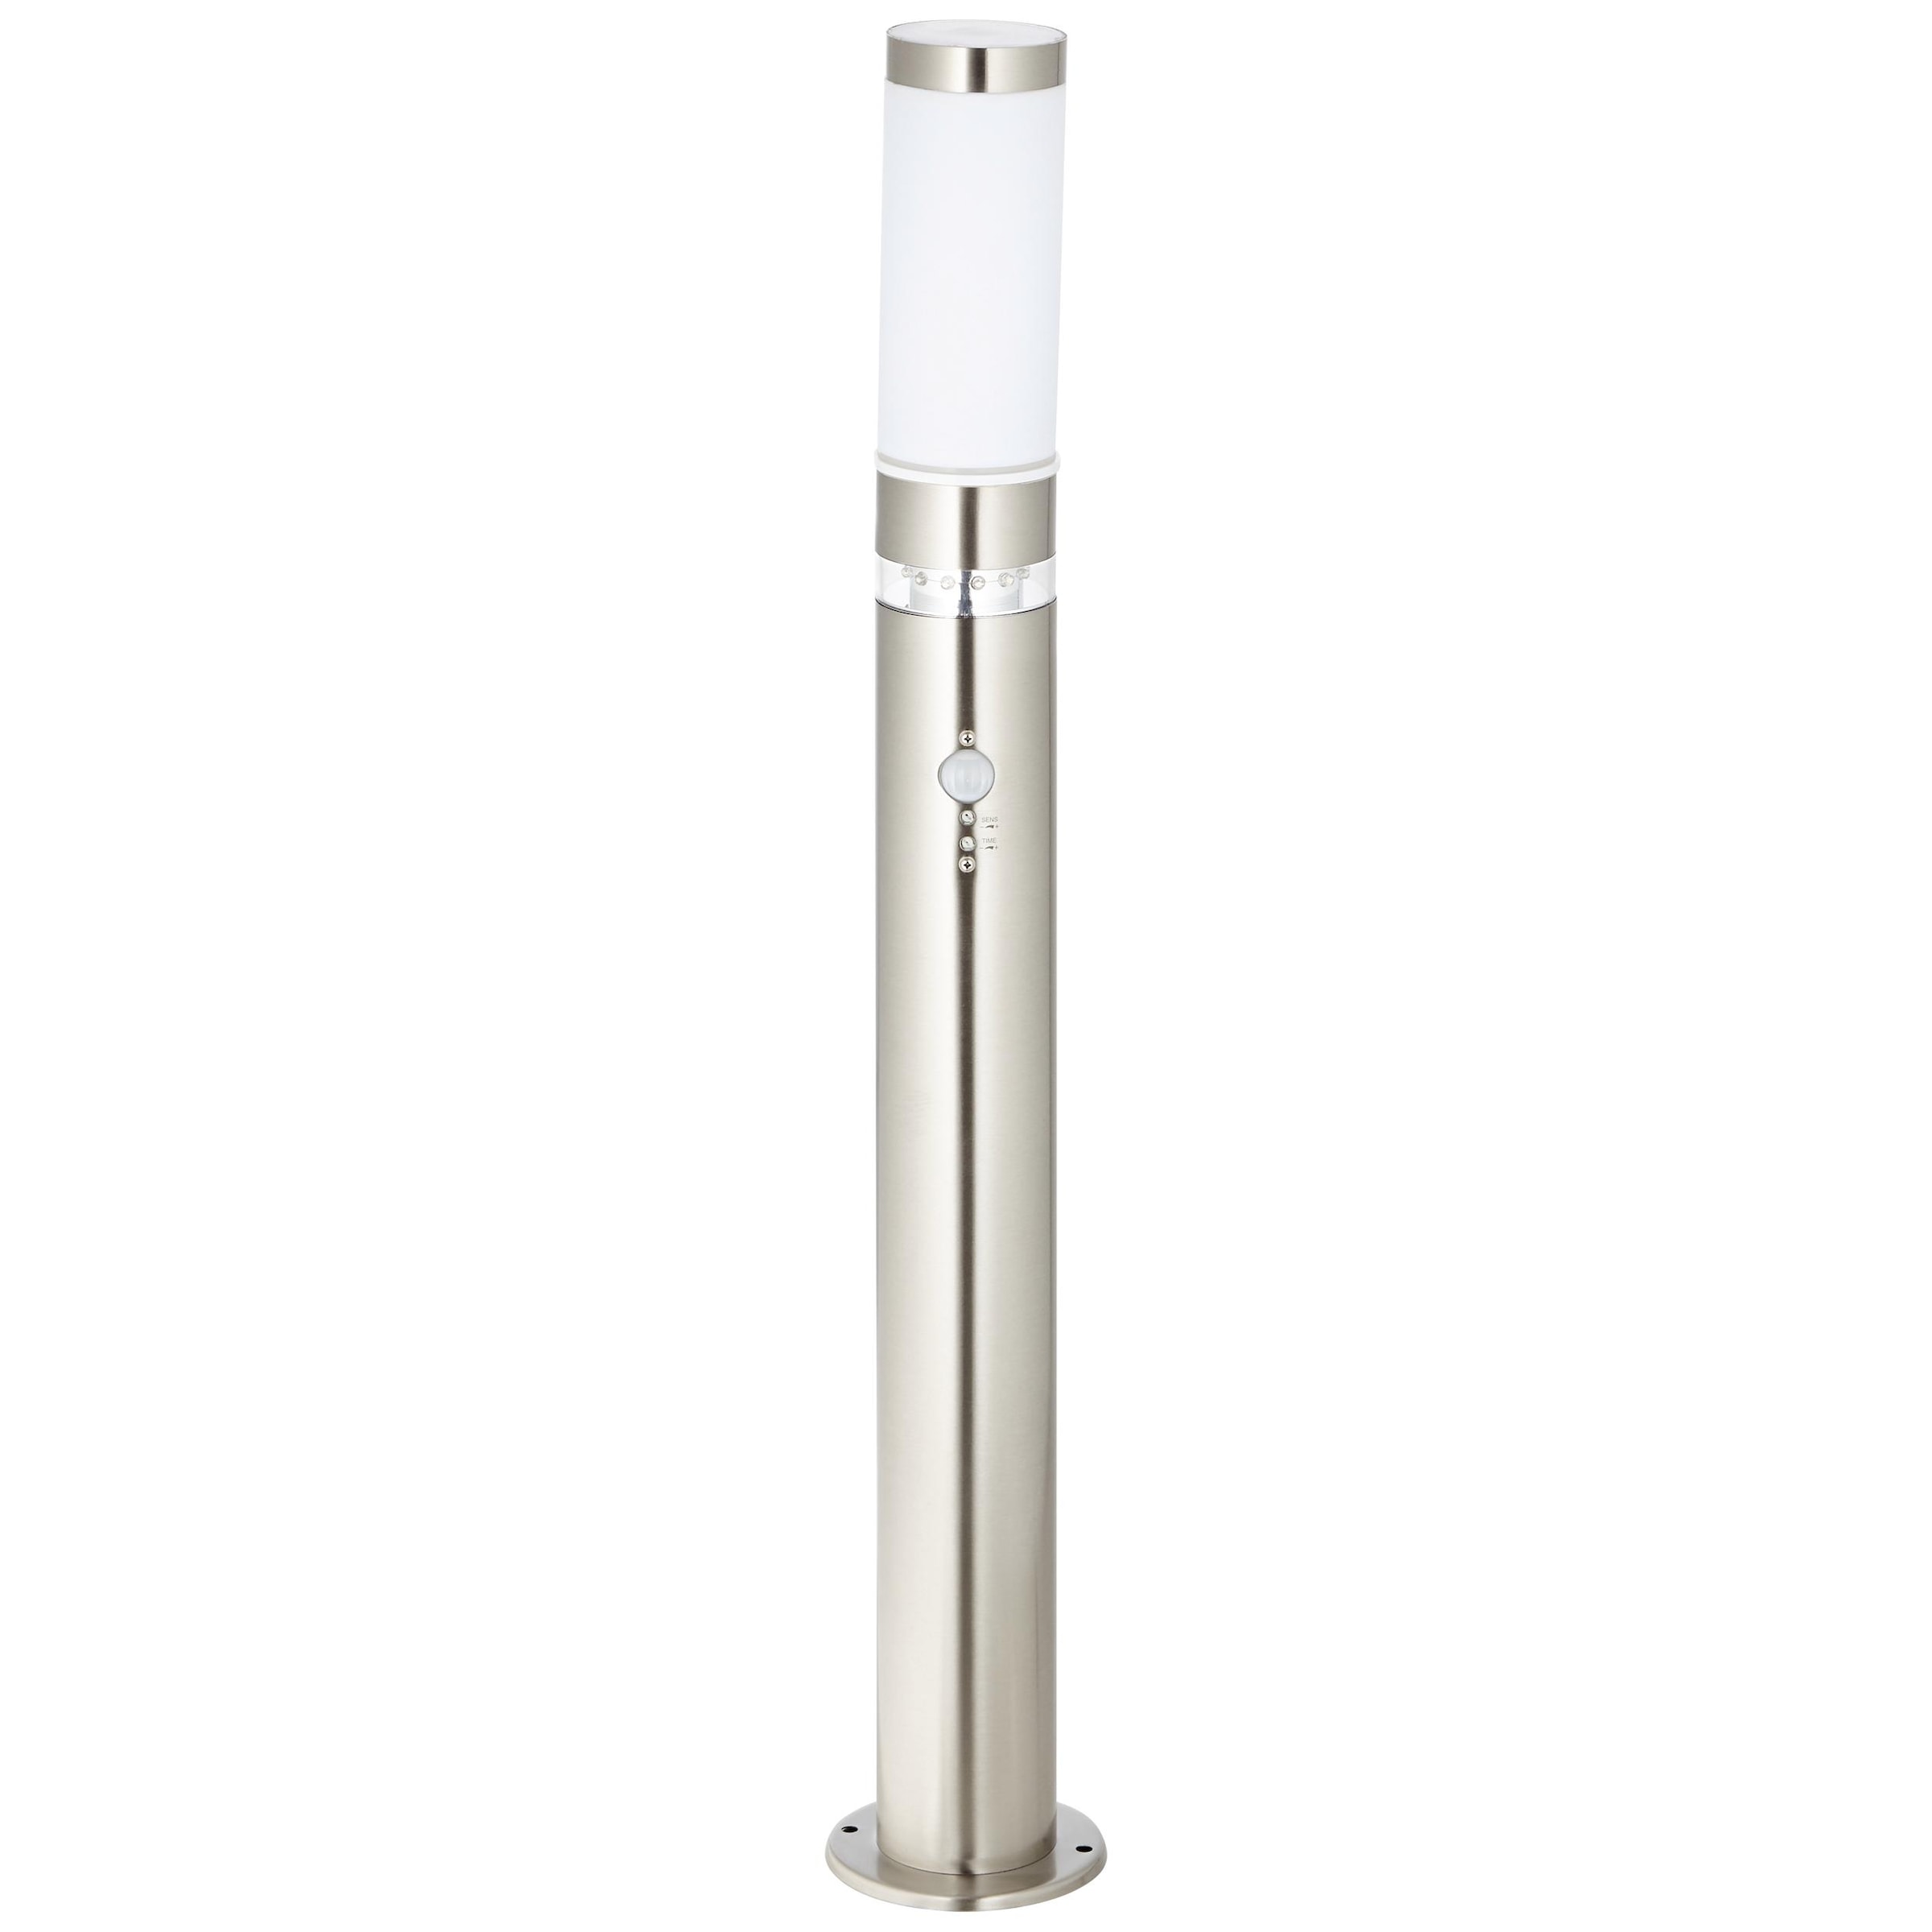 Brilliant Außen-Stehlampe "BOLE", 78 cm Höhe, Ø 8 cm, Bewegungsmelder, E27, Metall/Kunststoff, edelstahl